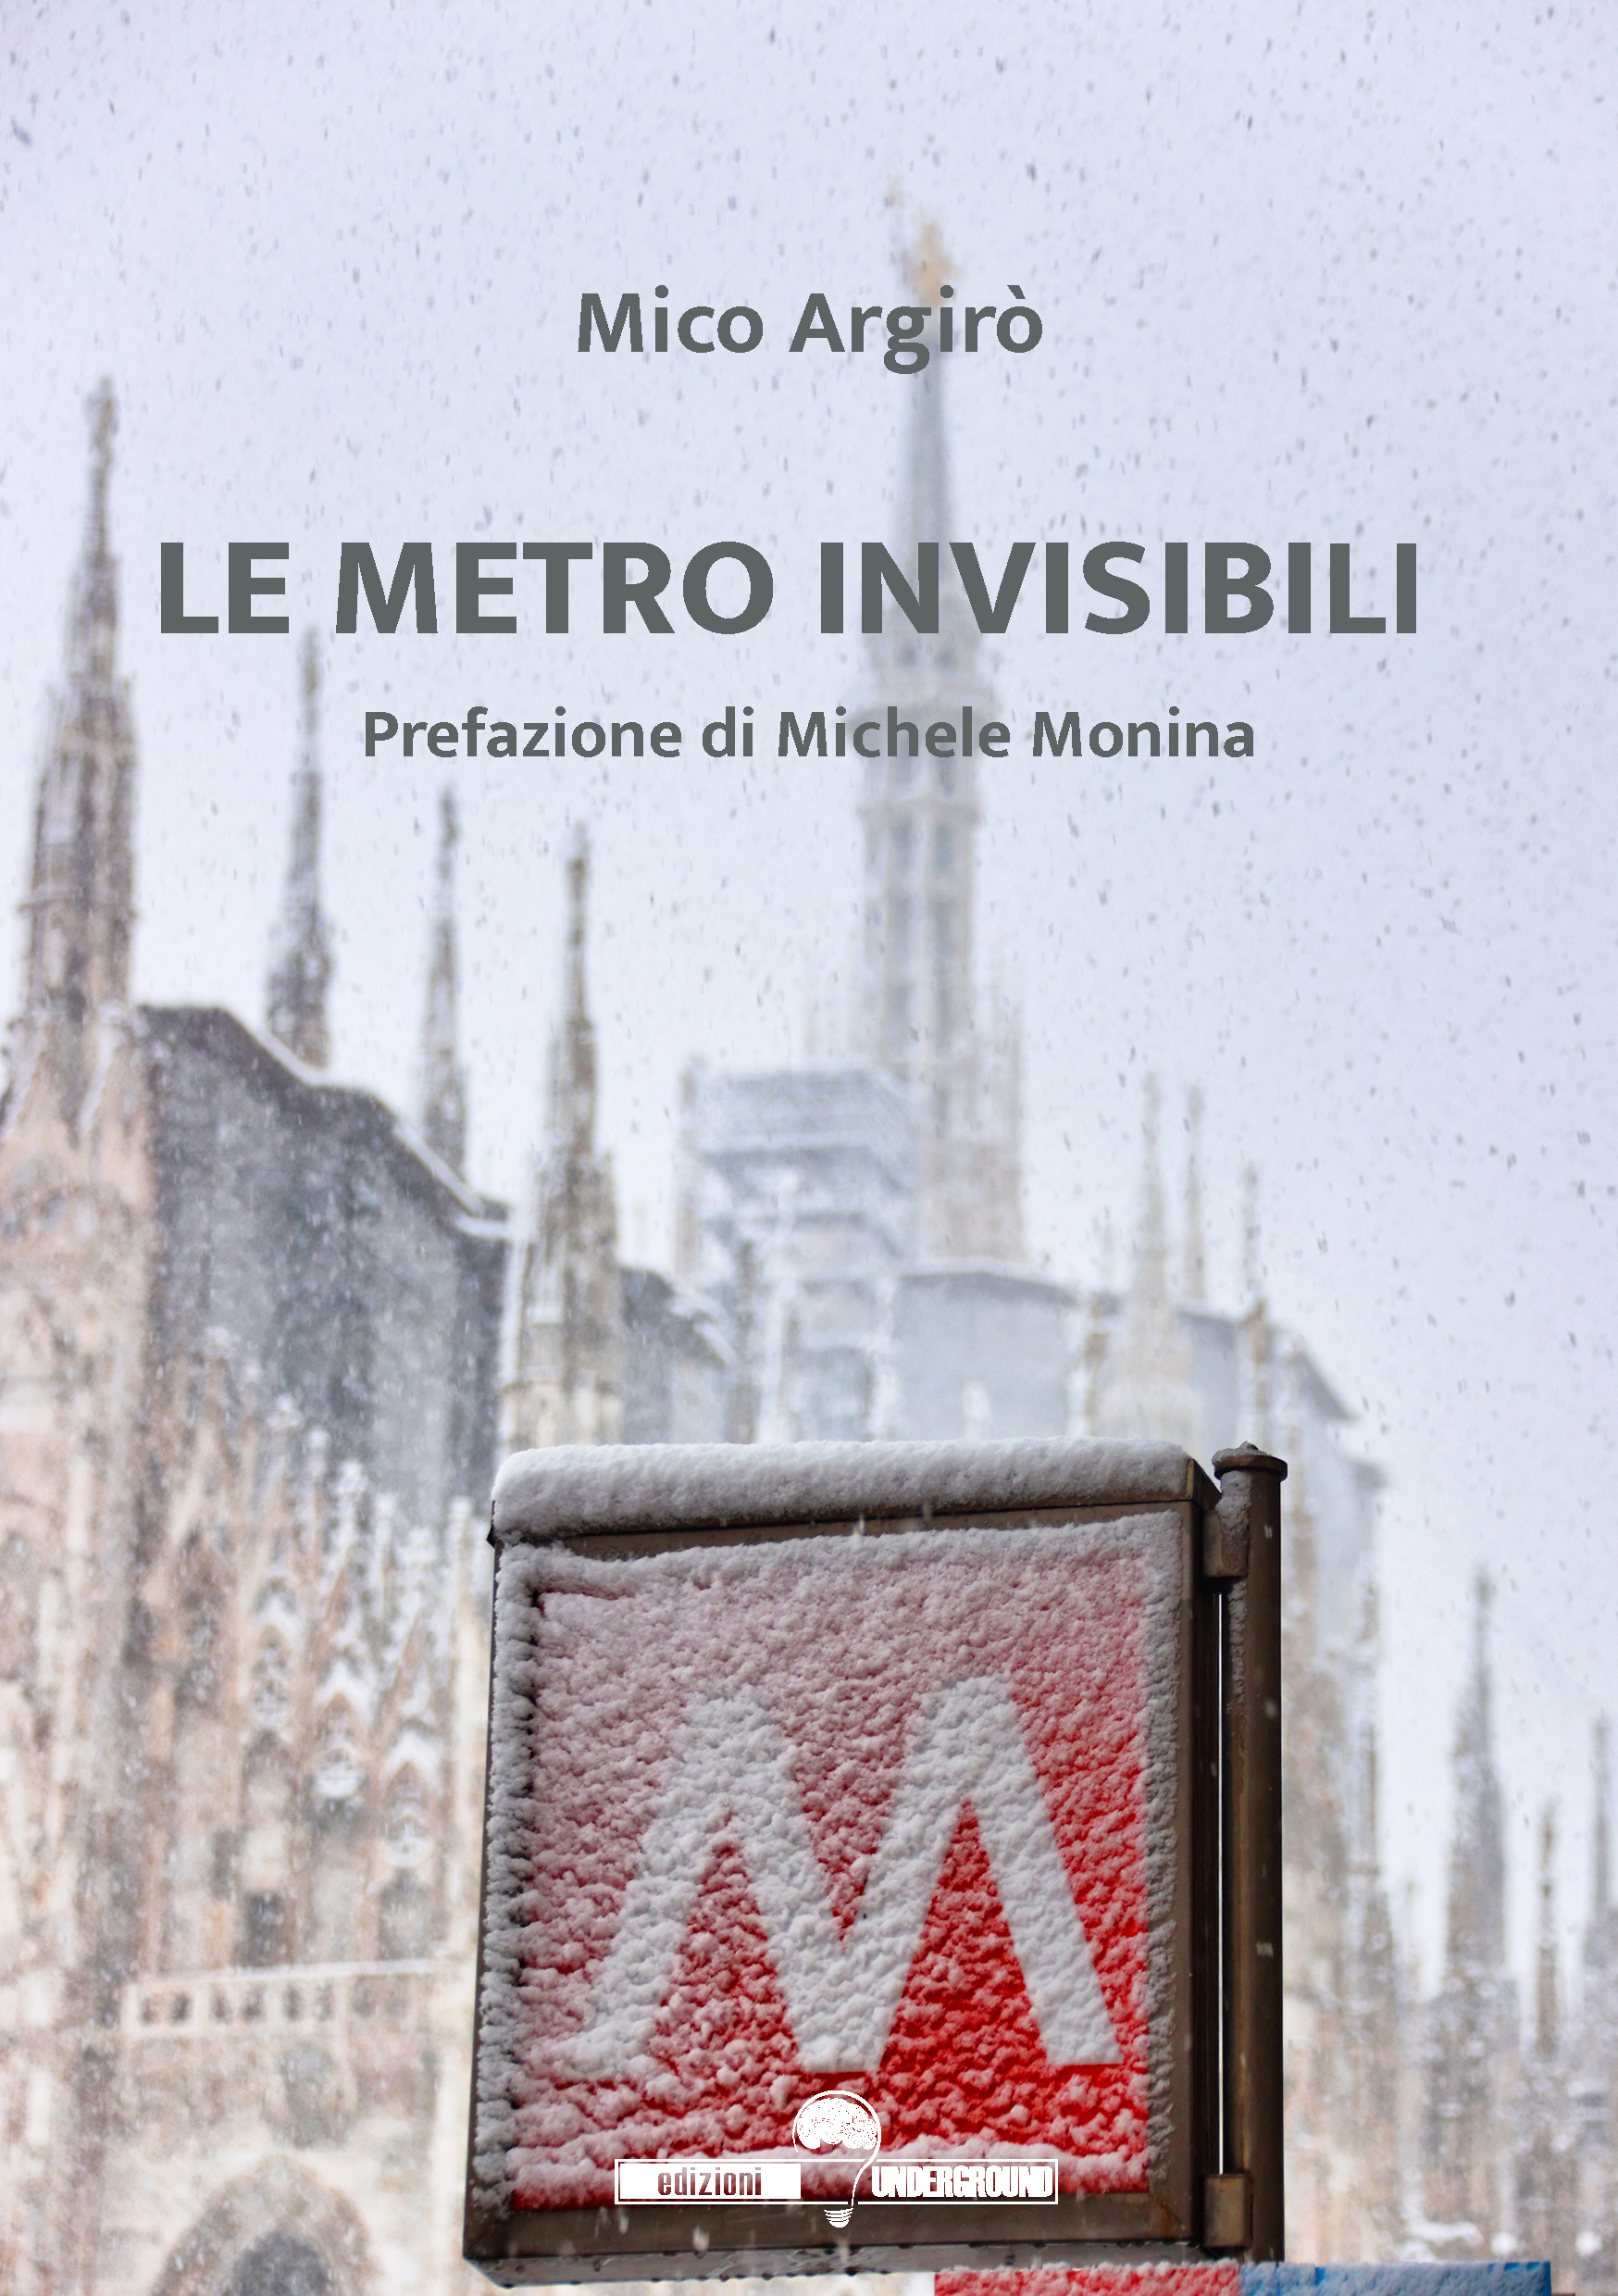 Con la prefazione di Michele Monina, esce “Le metro invisibili” (Edizioni Underground?), l’esordio letterario di Mico Argirò